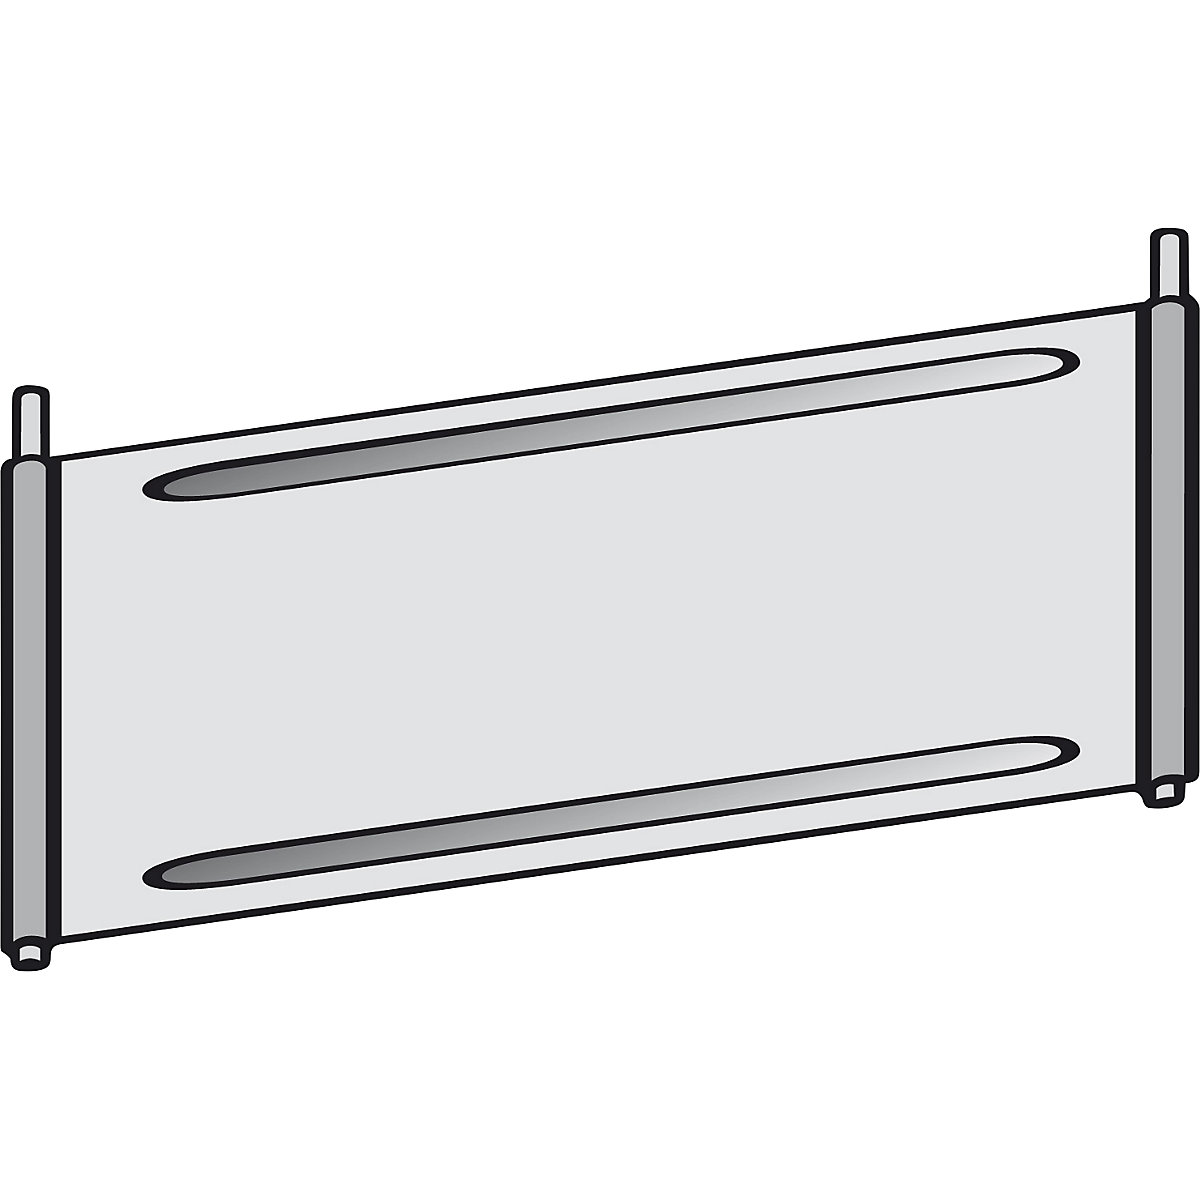 Trennblech für Fächer-Regal hofe, verzinkt, für Fachboden, BxT 1000 x 400 mm-4